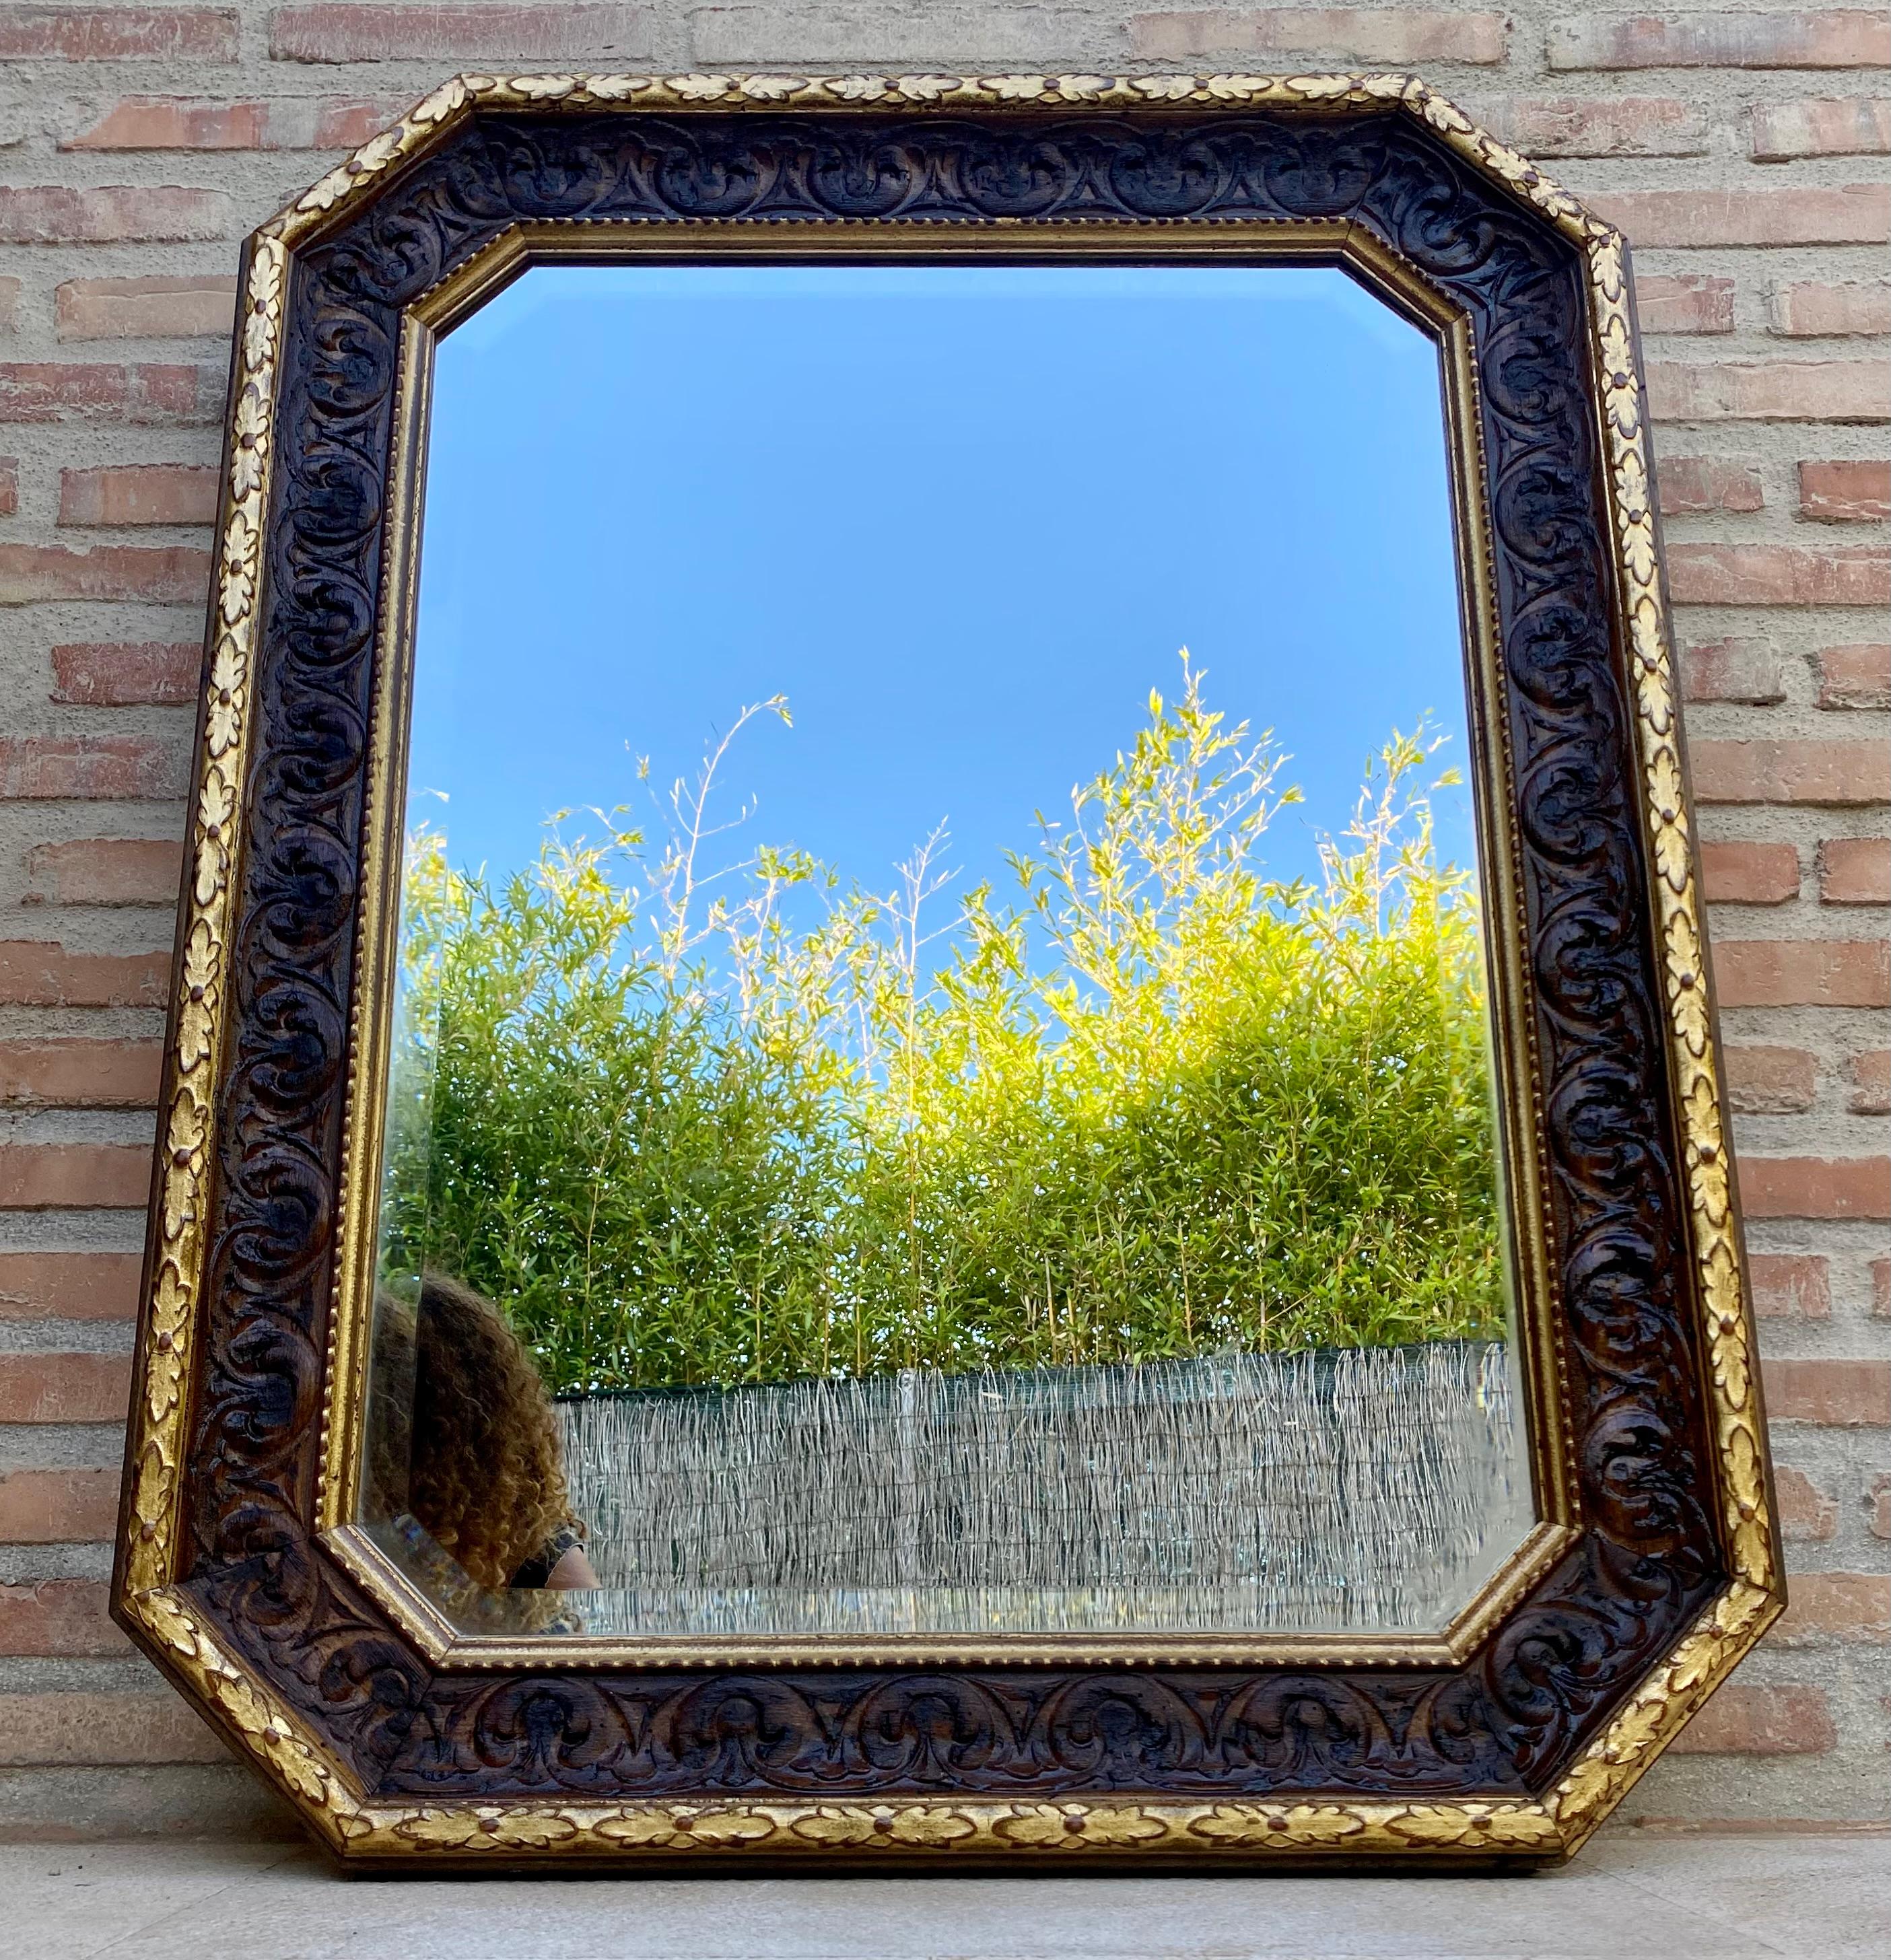 Oktogonaler Wandspiegel mit geschnitztem Goldholzrahmen, 1940er Jahre.
Seine achteckige Form macht diesen Spiegel zu einem einzigartigen Stück.
Der Rahmen ist vollständig geschnitzt, was diesem kostbaren Stück aus den 40er Jahren Grandeur verleiht.